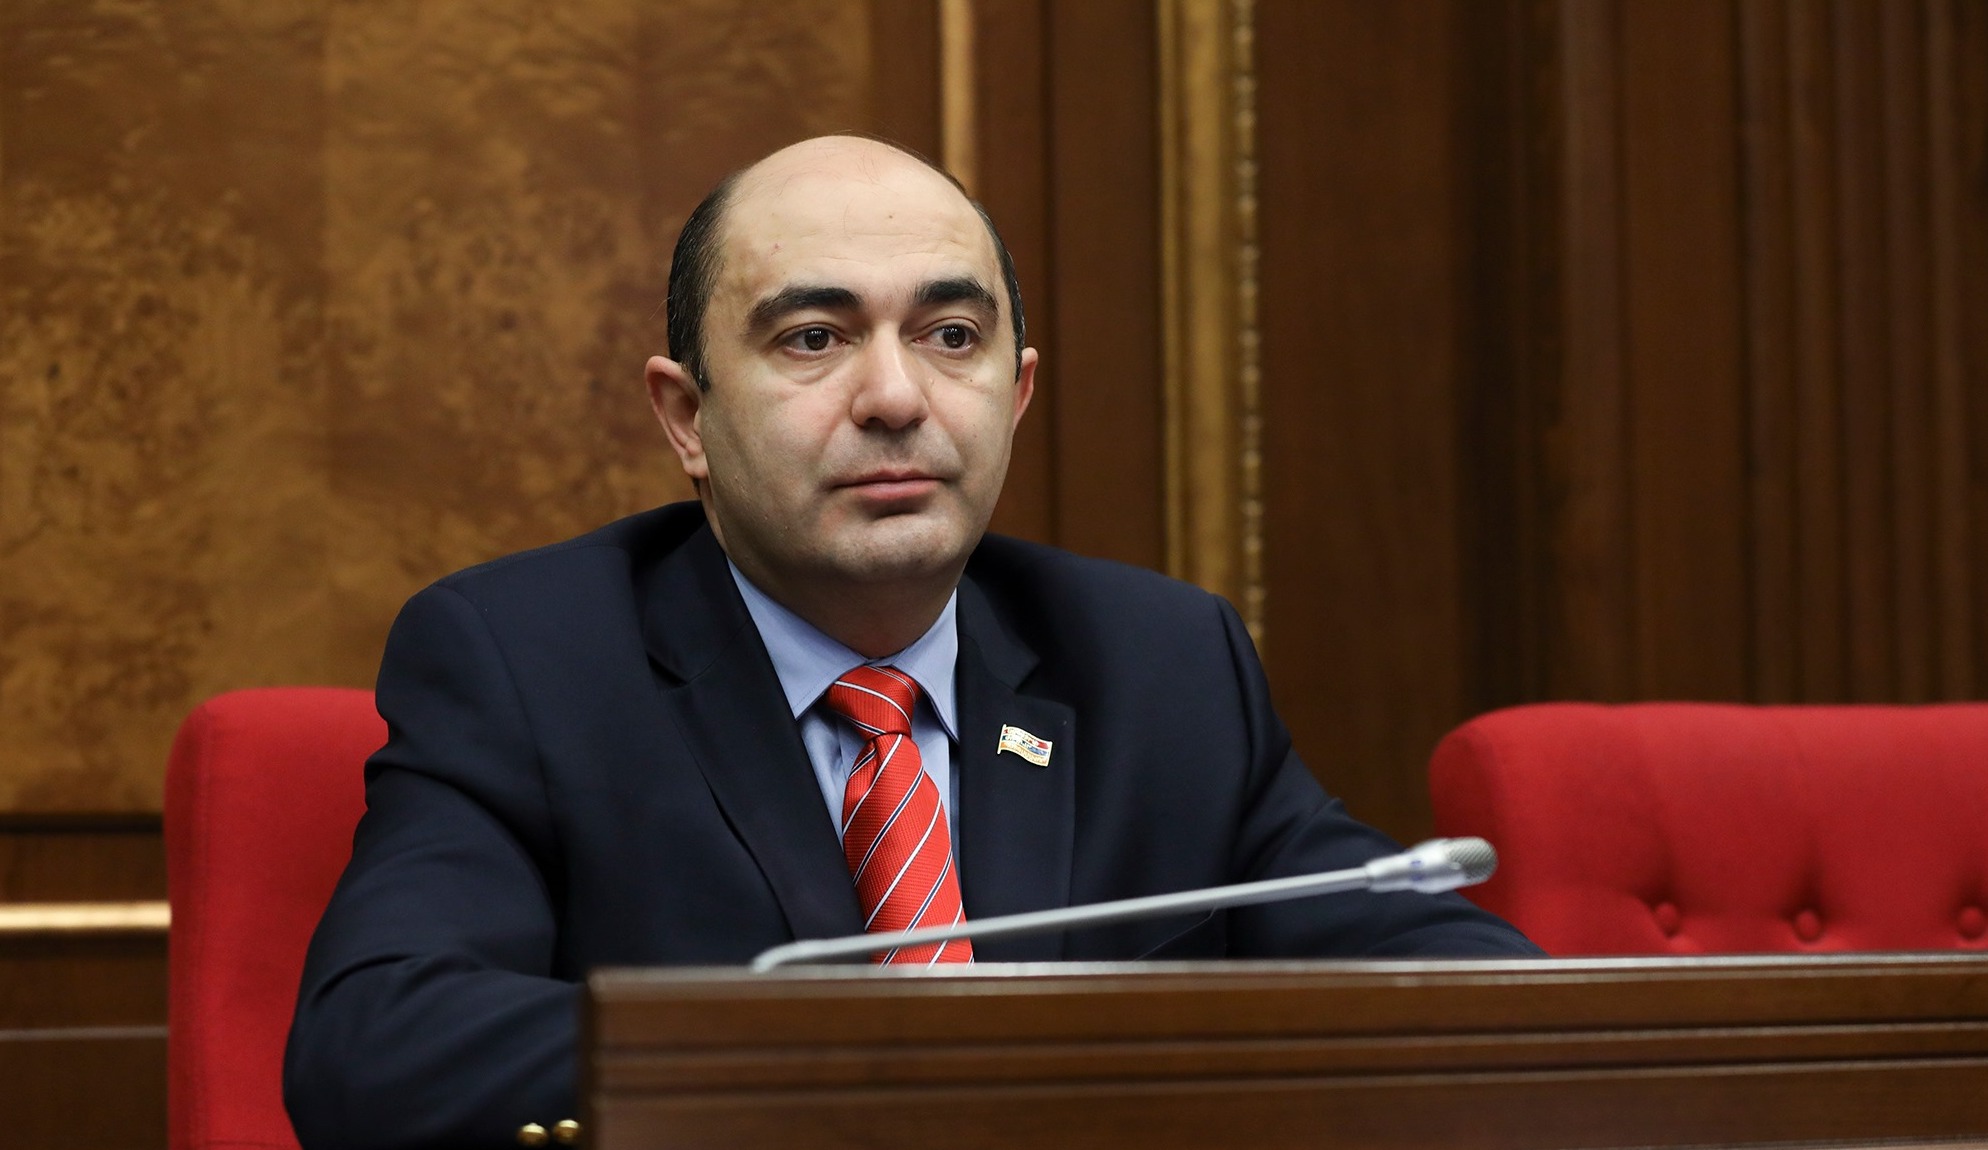 Посол по особым поручениям Армении о необходимости доверия между Арменией и Азербайджаном для достижения мира